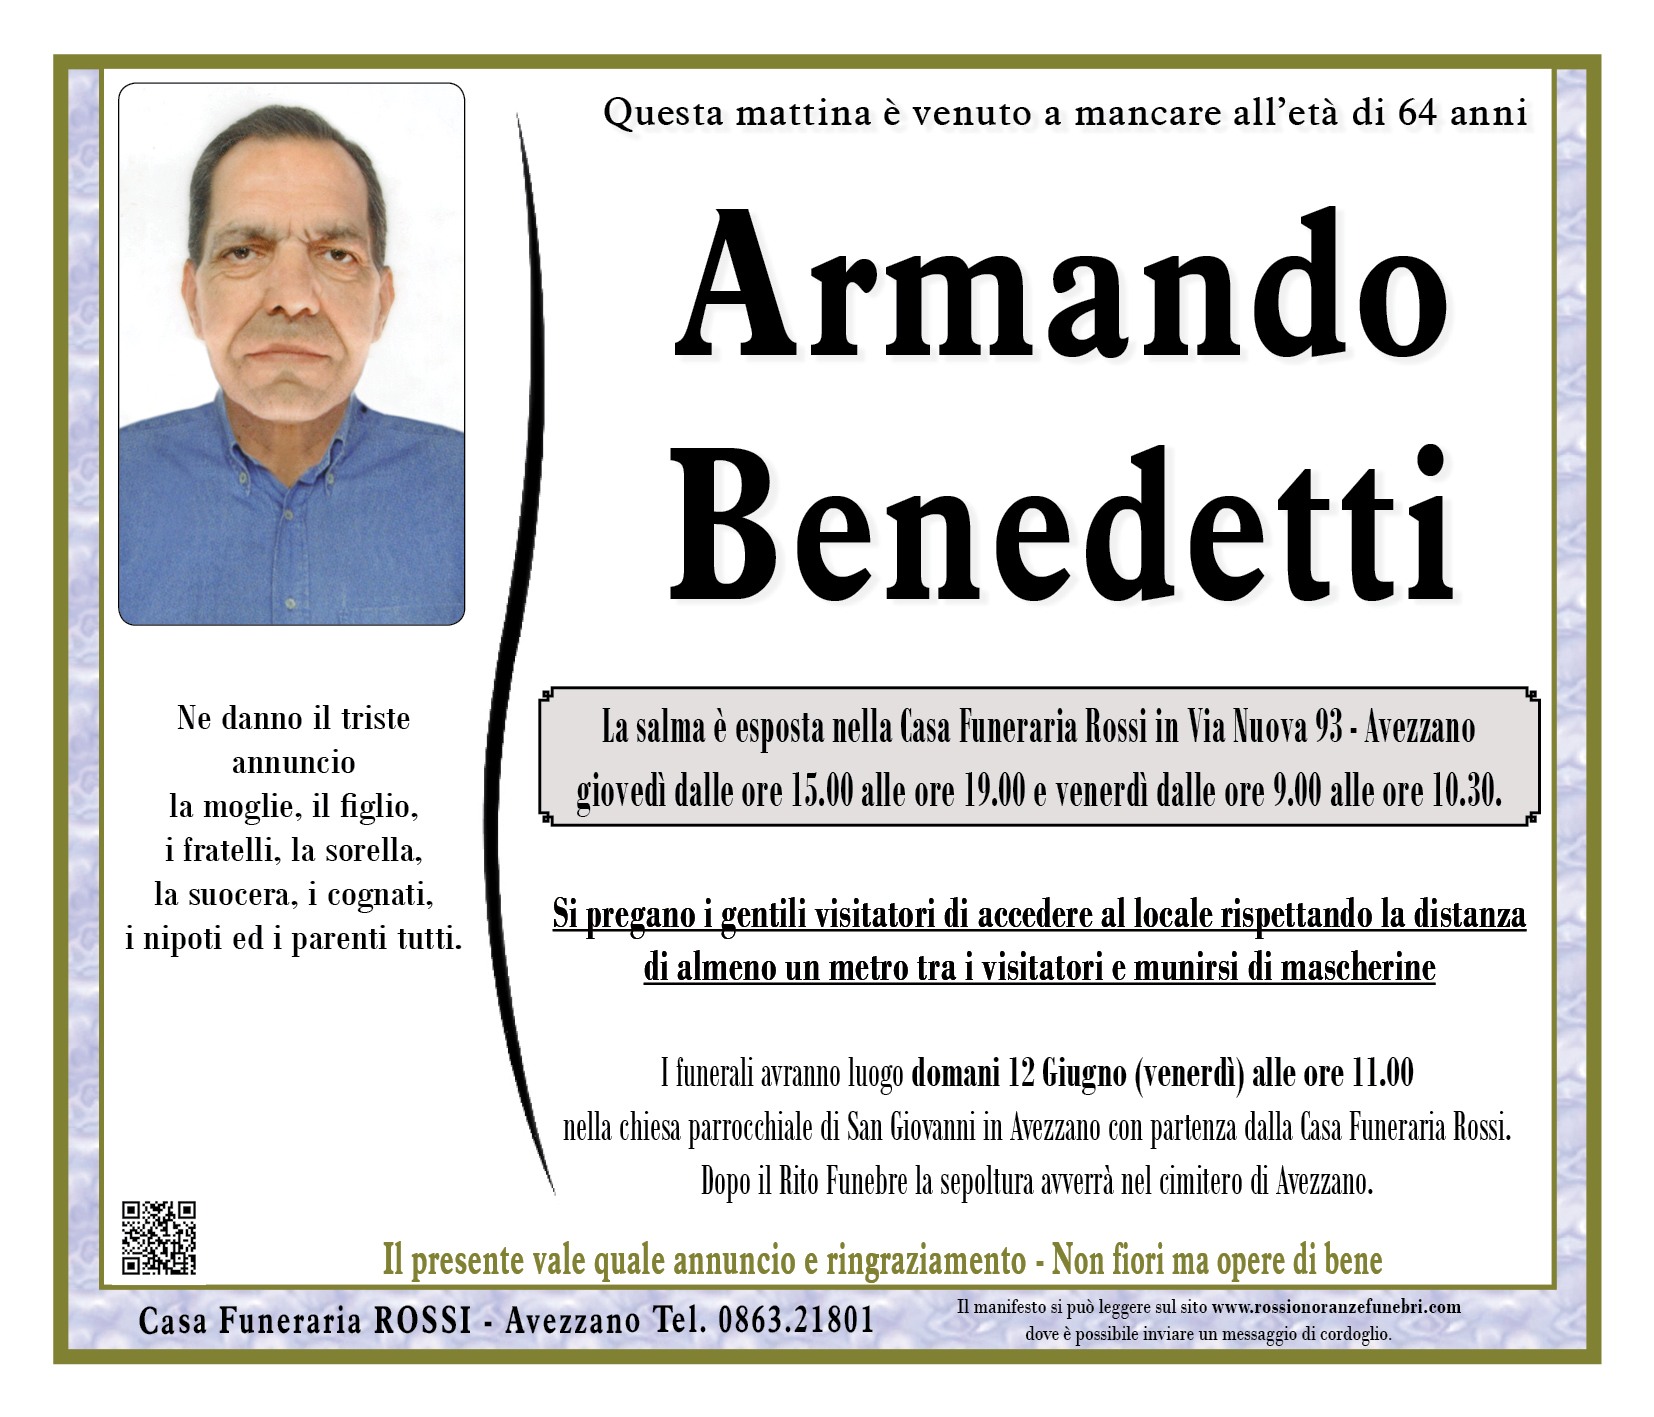 Armando Benedetti